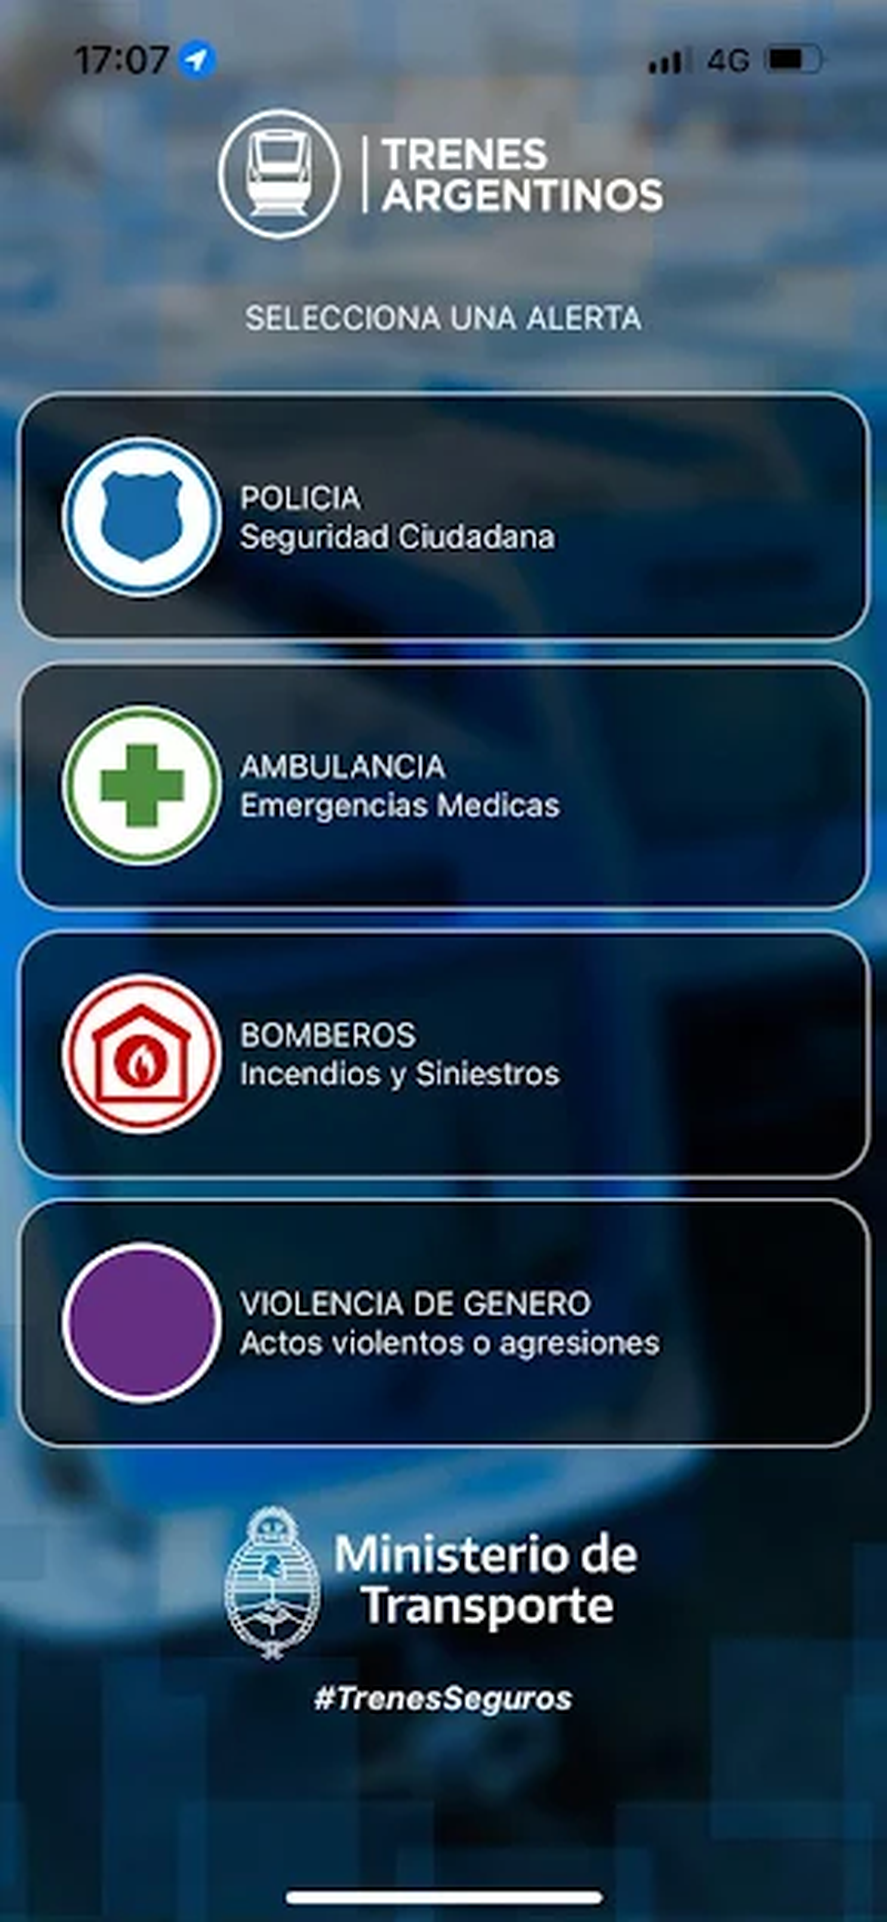 A trav&eacute;s de esta aplicaci&oacute;n lanzada por Trenes Argentinos Operaciones, sus usuarios tambi&eacute;n pueden denunciar casos de violencia de g&eacute;nero.&nbsp;